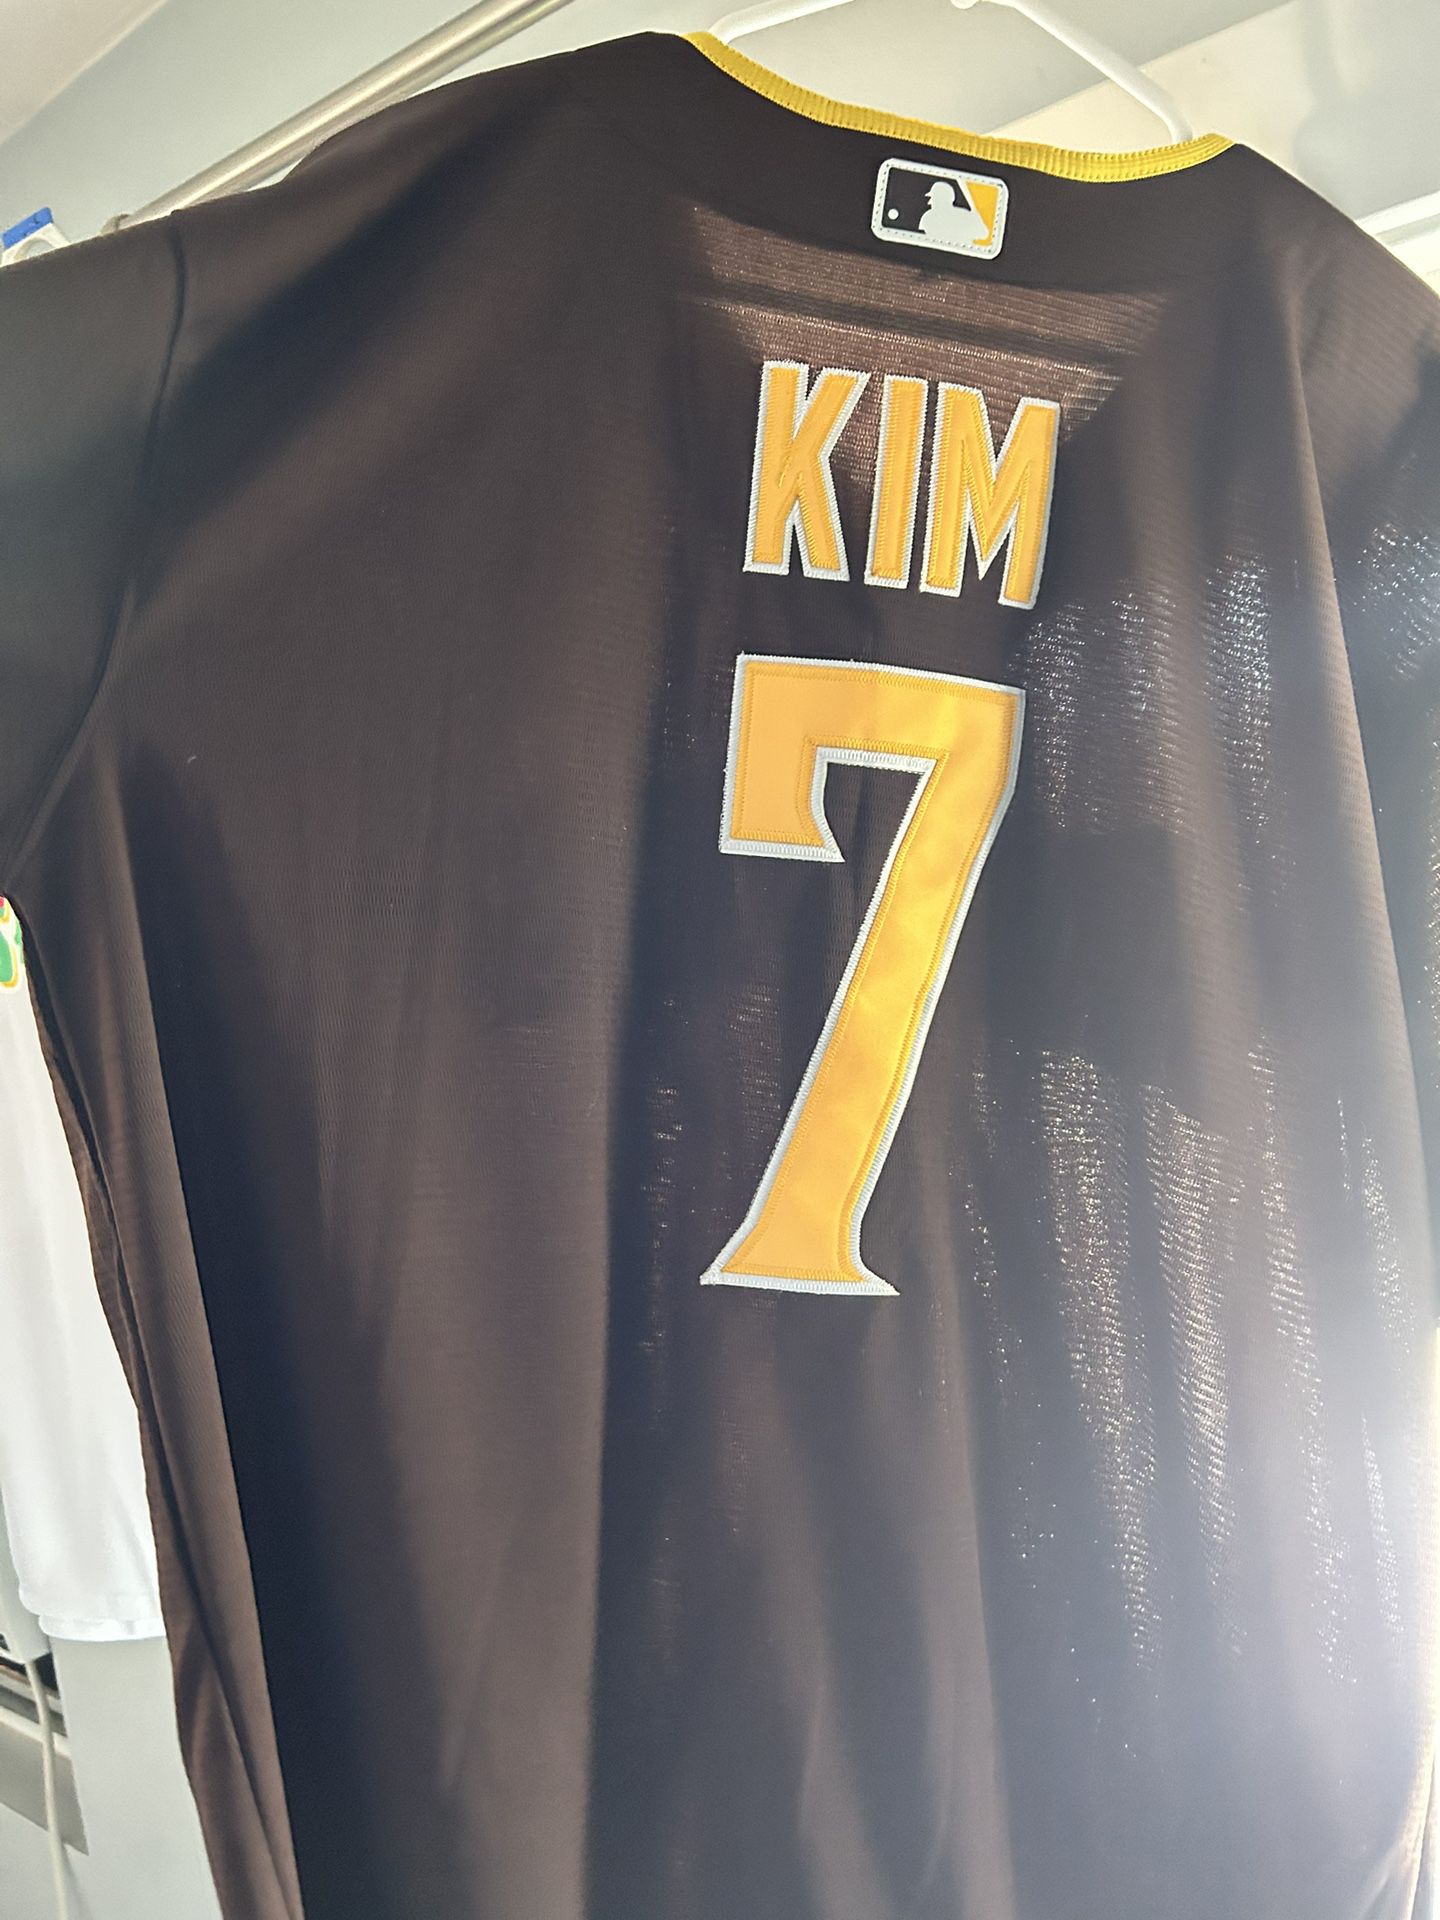 Ha-Seong Kim - San Diego Padres (MLB Baseball Card) 2022 Topps # 188 M –  PictureYourDreams